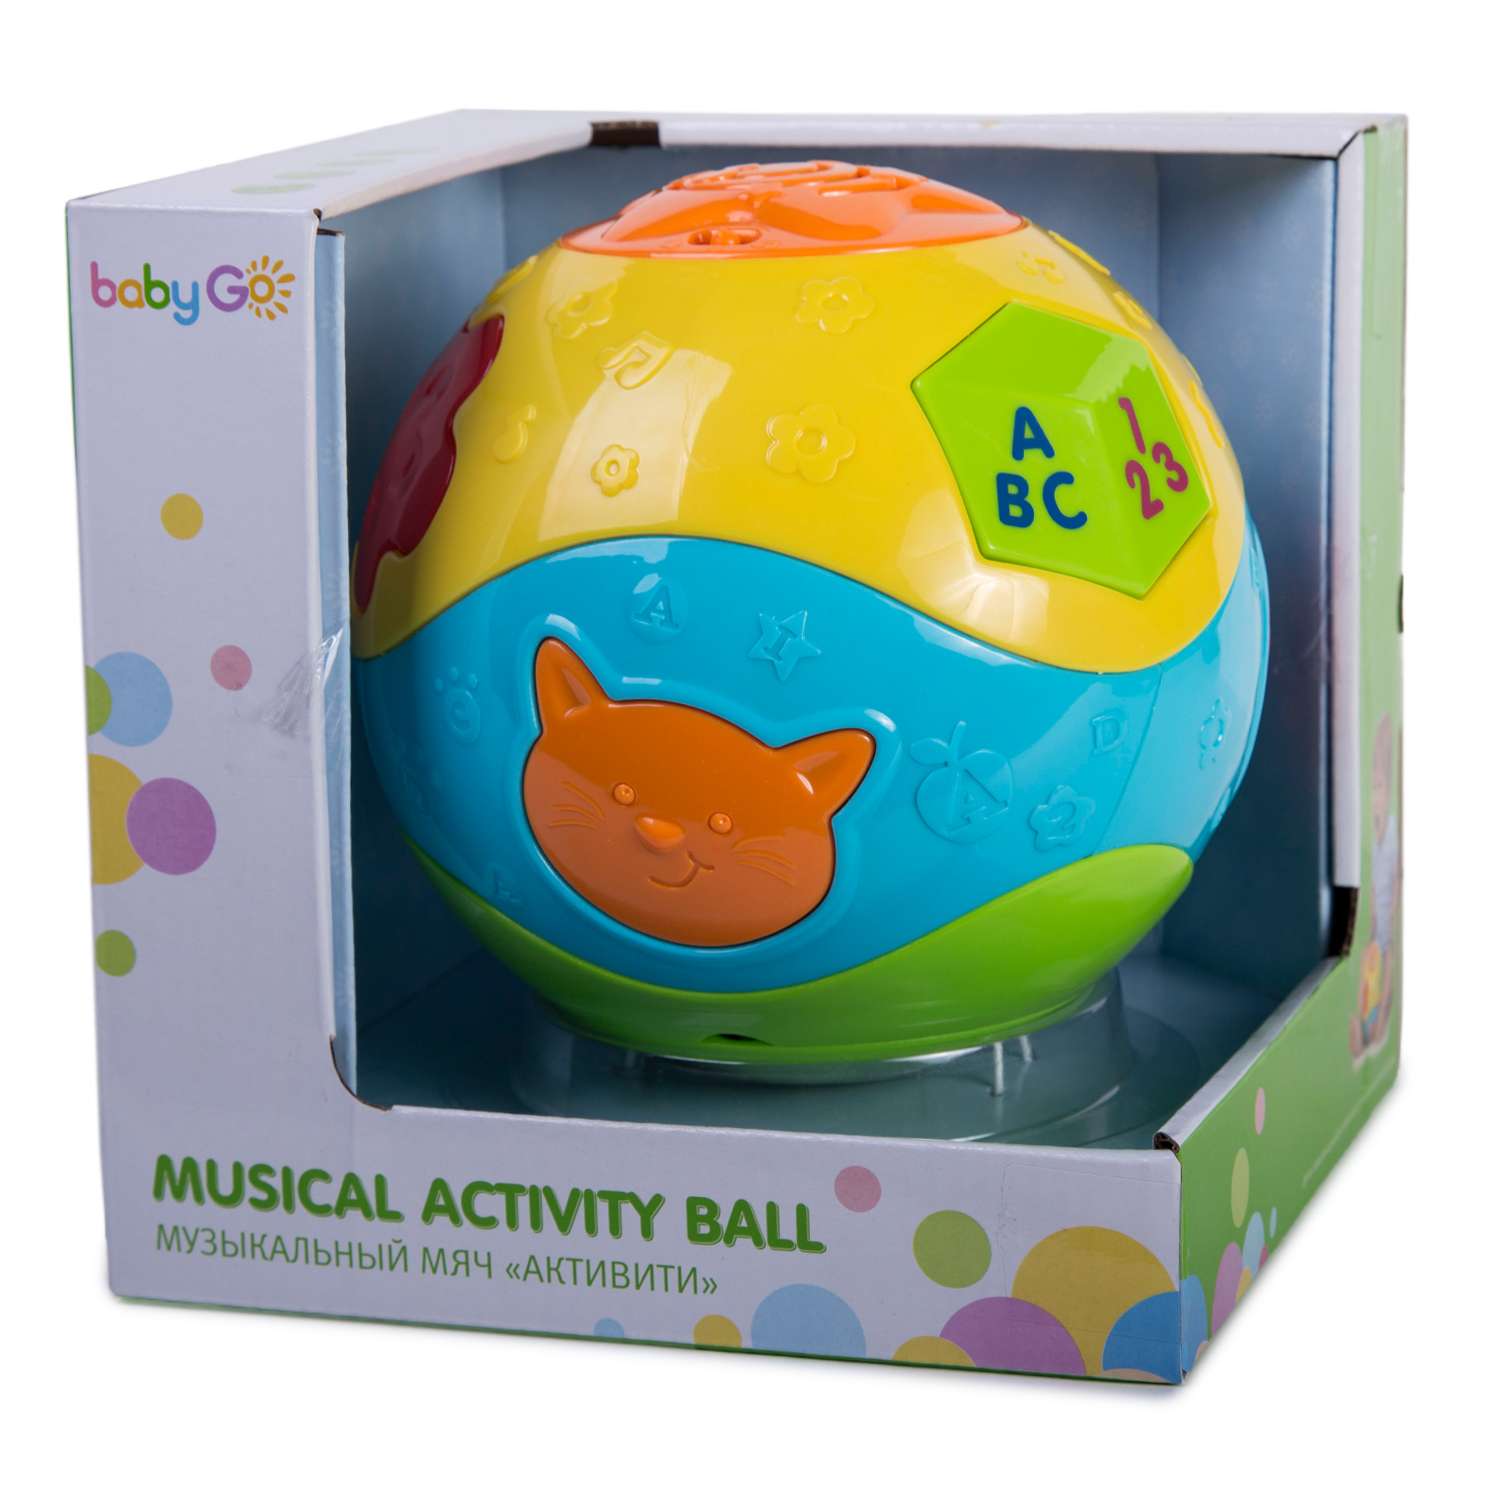 Музыкальный мяч BabyGo Активити - фото 3